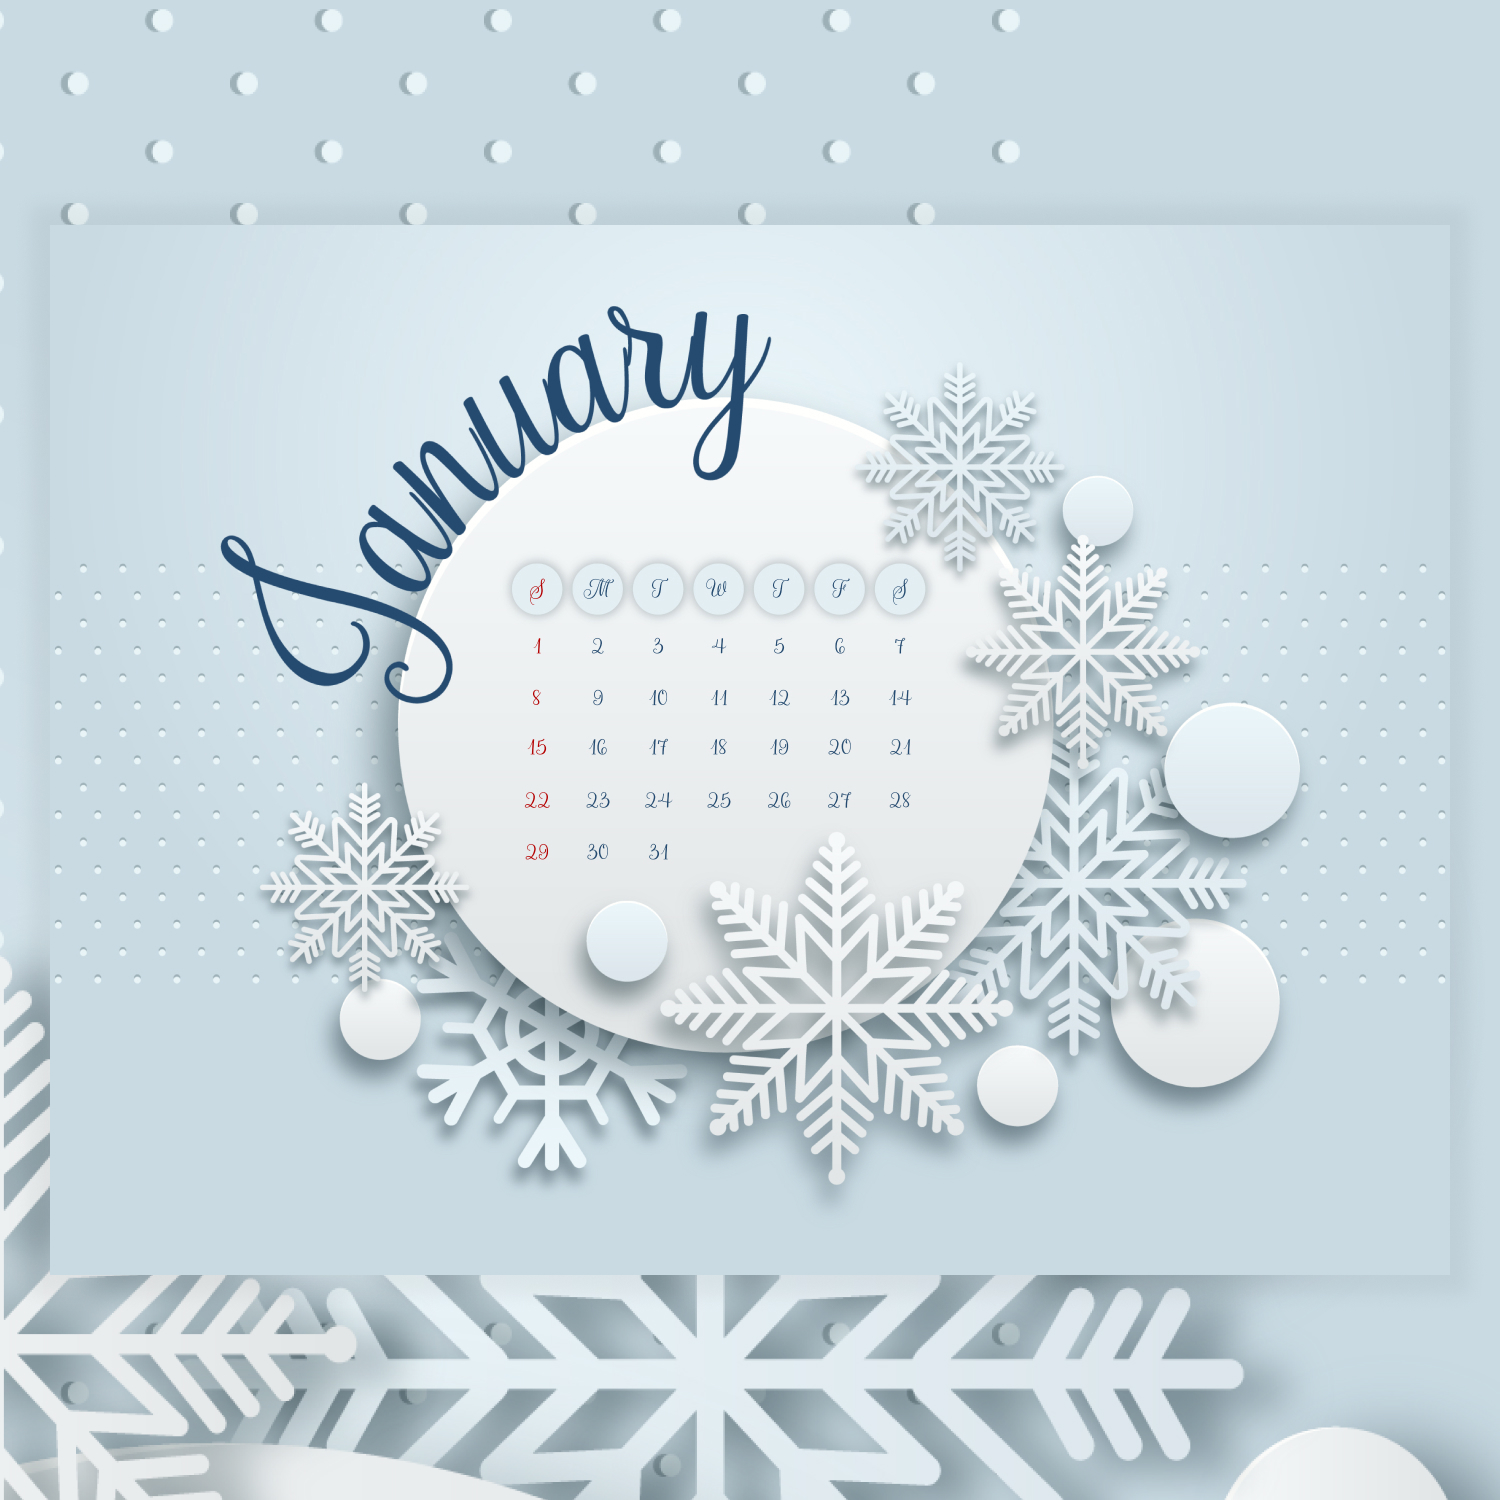 Free Snow January Calendar cover.